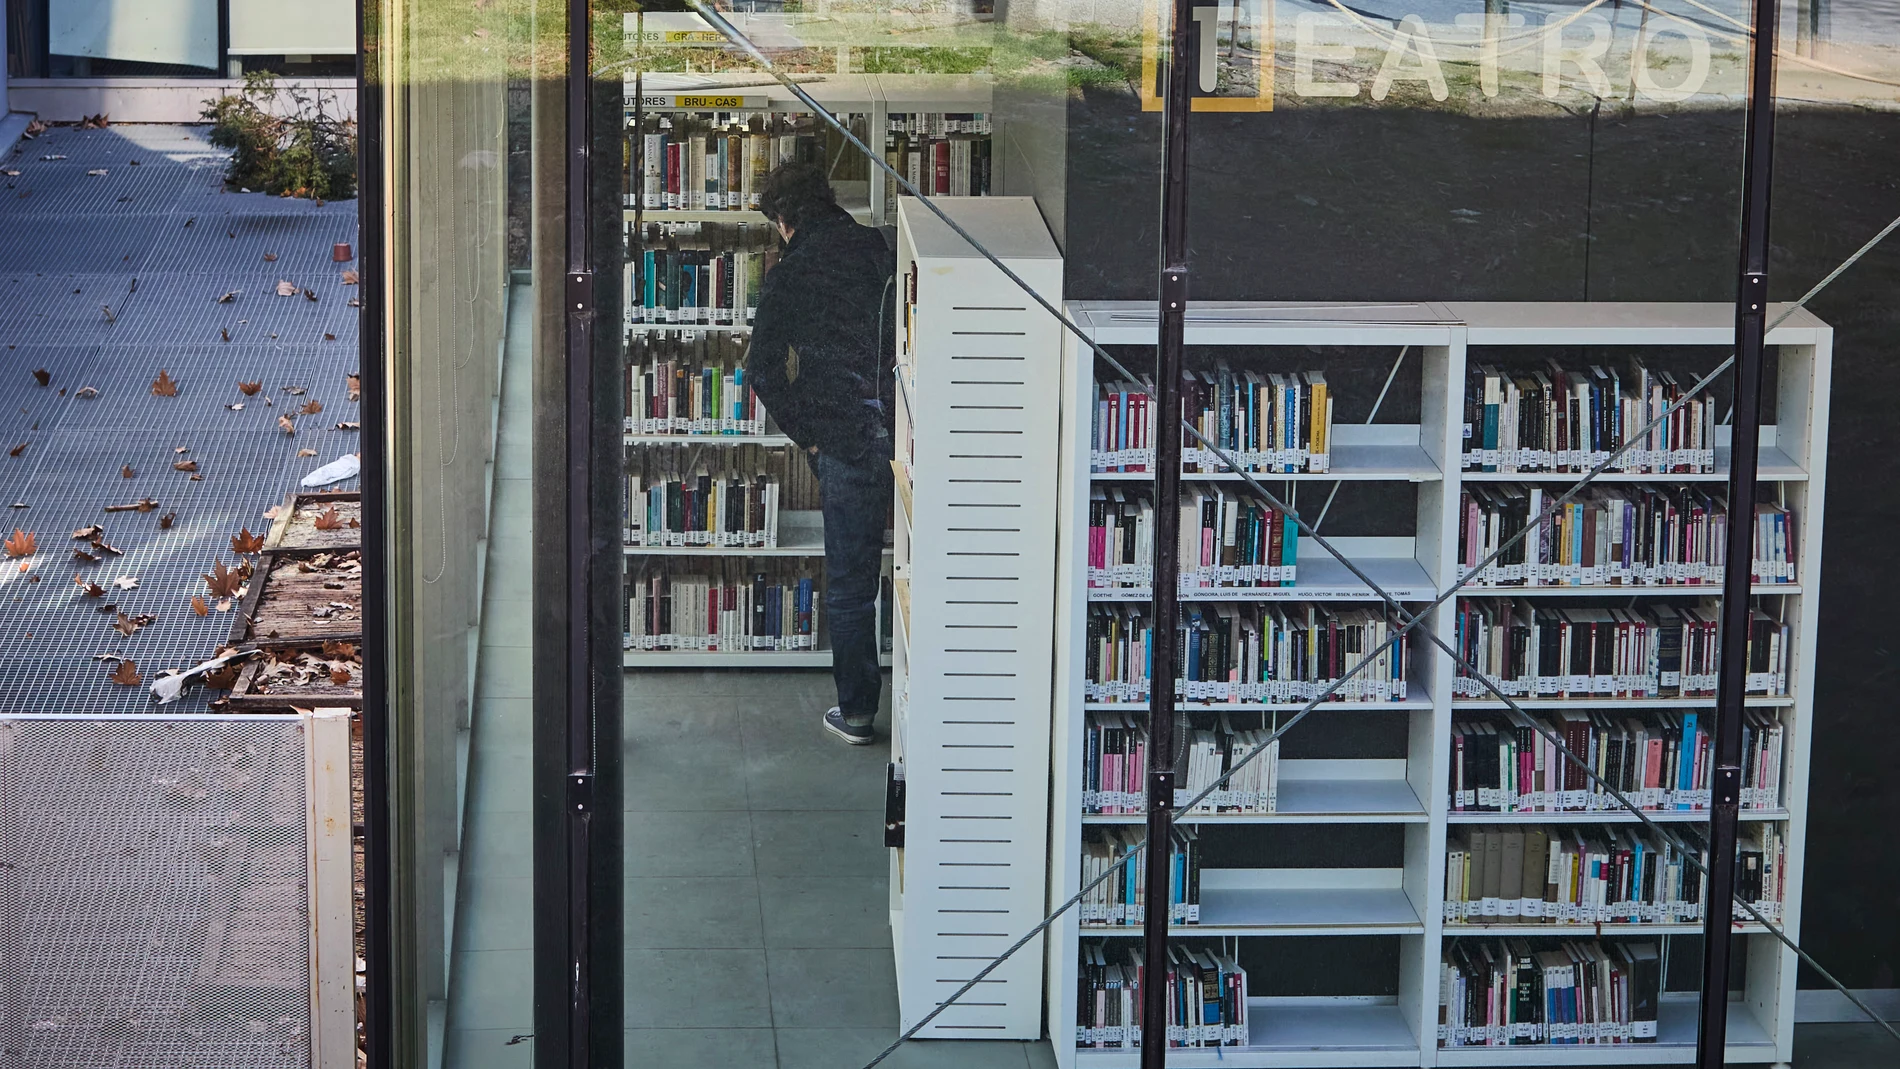 Gente leyendo libros junto a la biblioteca pública Eugenio Trías-Casa de Fieras de El Retiro